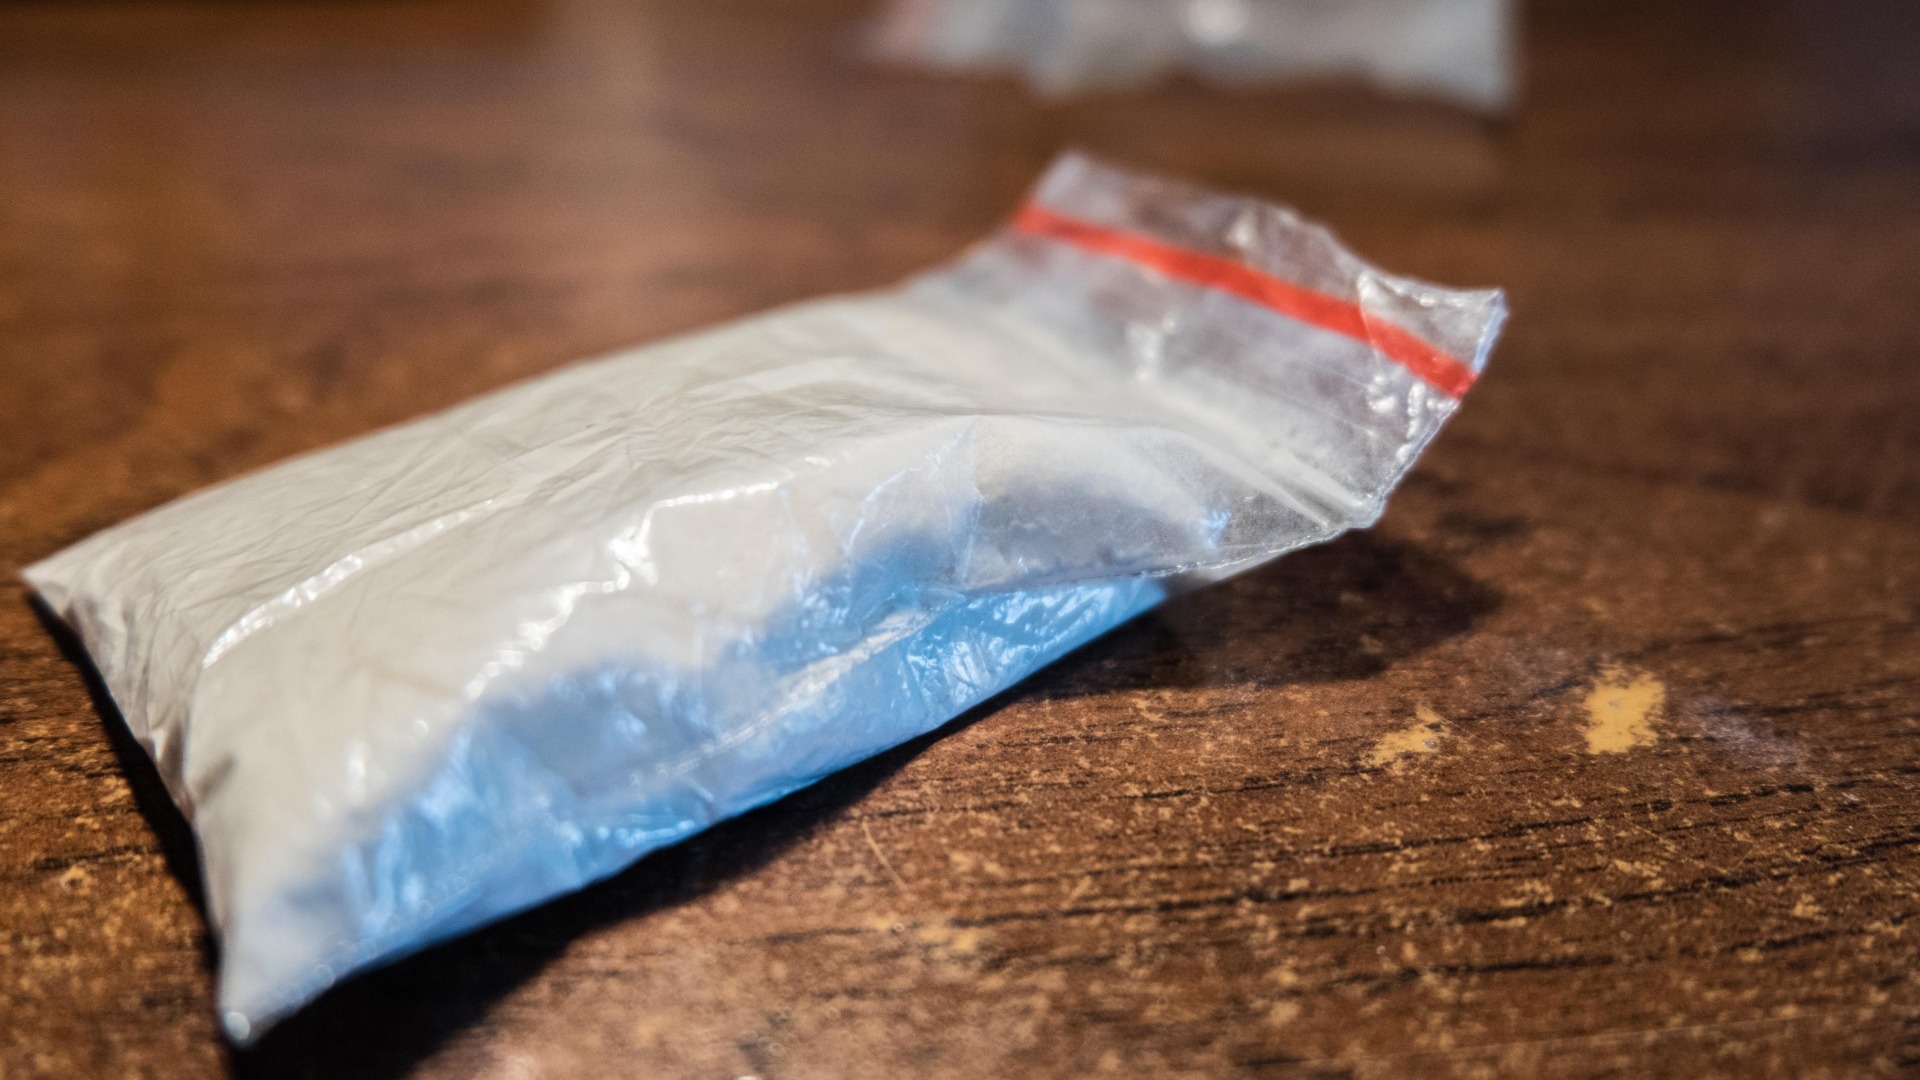 Нарколабораторию с 31 килограммом наркотиков нашли у двух мужчин в Ростове